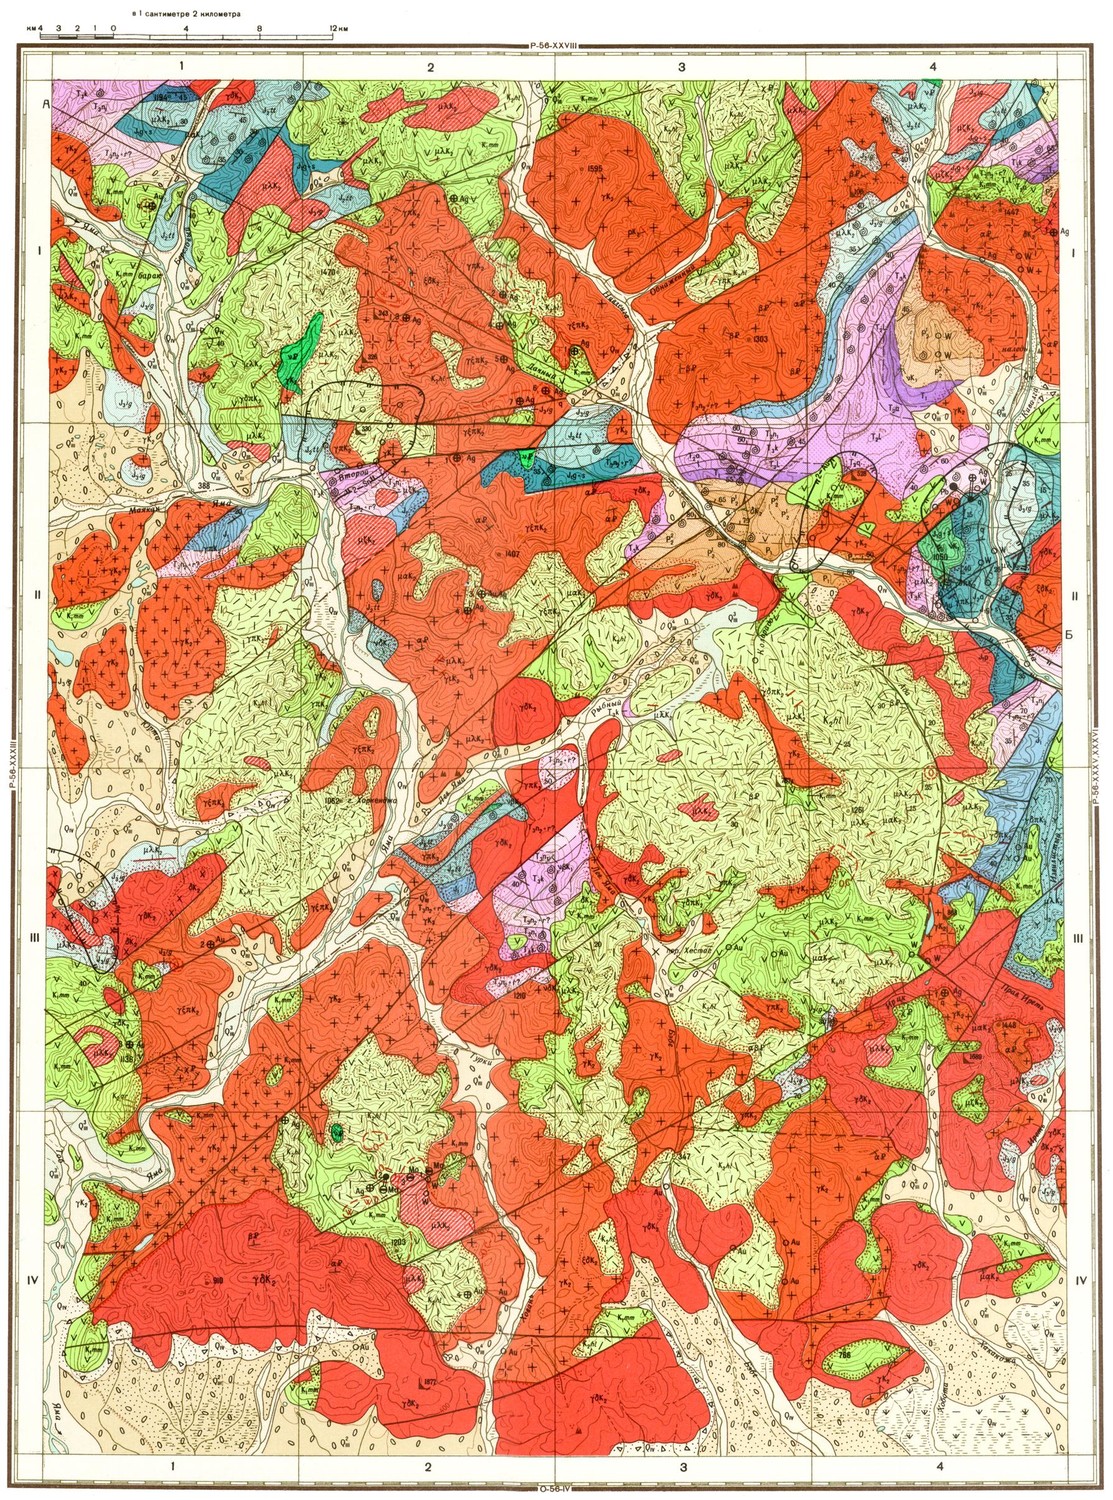 Геологические карты для оценки рисков при строительстве будут разработаны для ТиНАО в мае 2018 г.